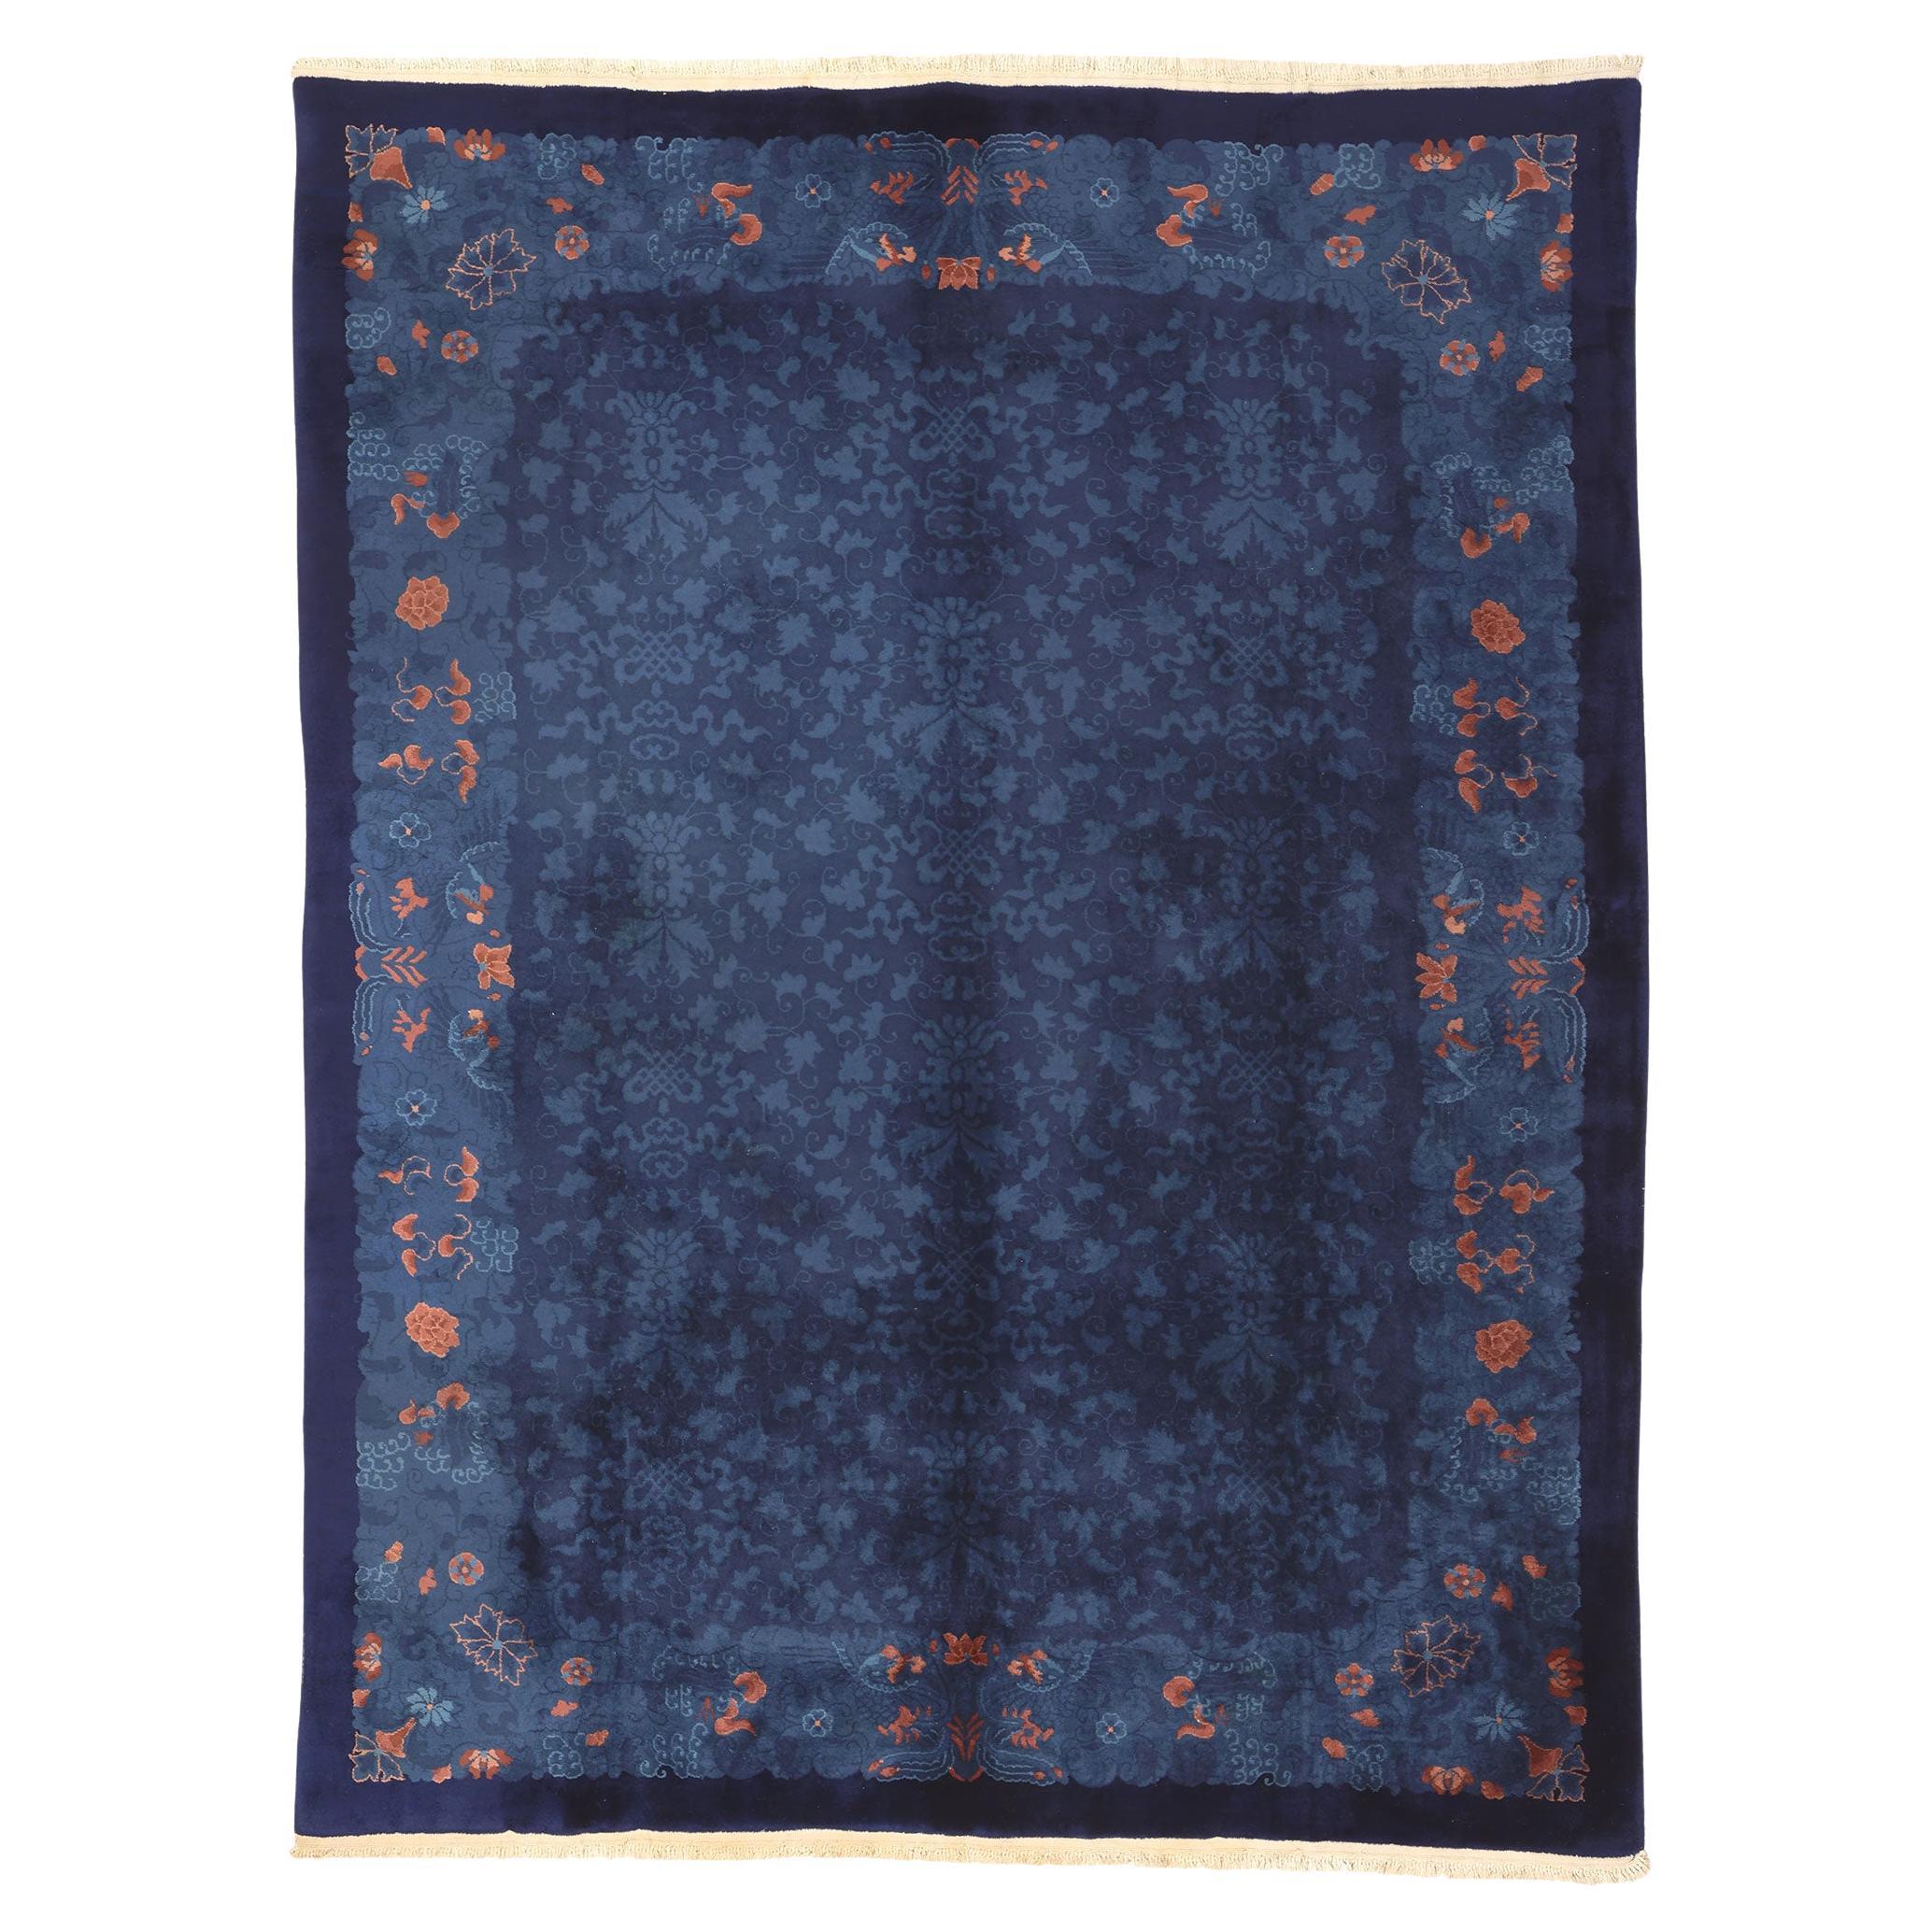 Antiker blauer chinesischer Teppich im Qing-Dynastie-Stil, indigoblauer chinesischer Qing-Teppich